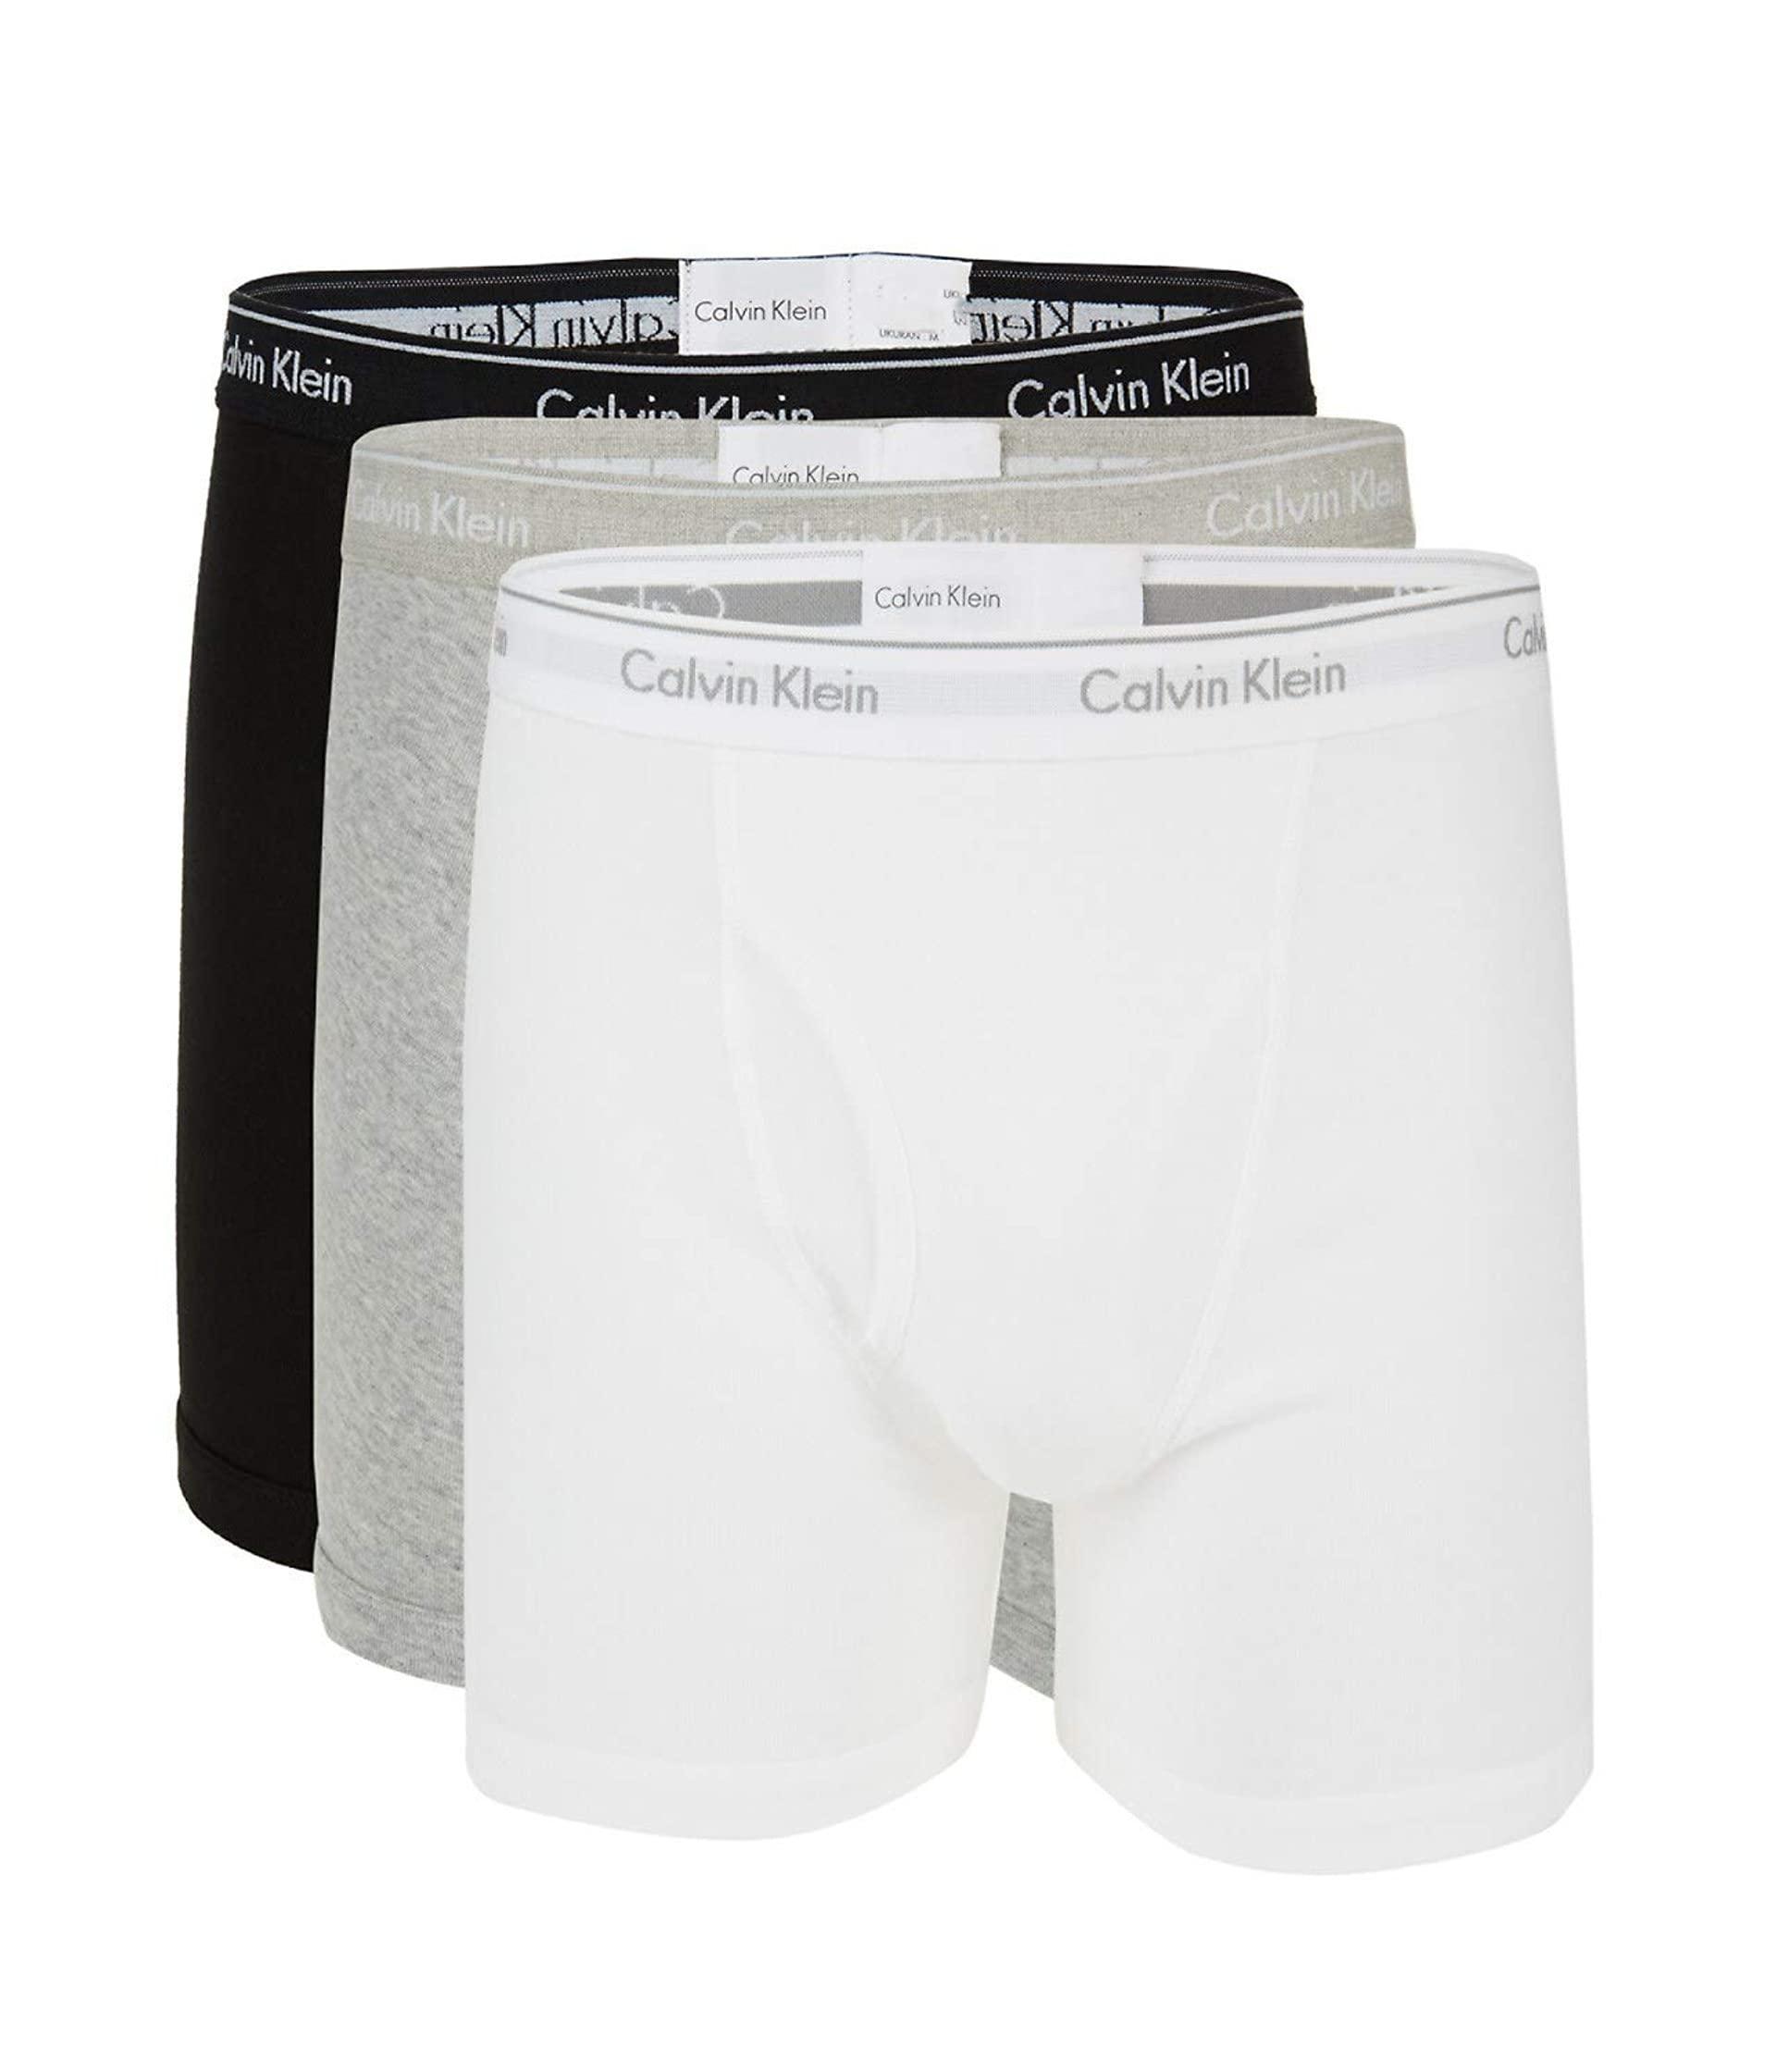 Calvin Klein 100% Cotton Boxer Briefs in Black, White, Grey Heather (White)  for Men - Save 62% | Lyst